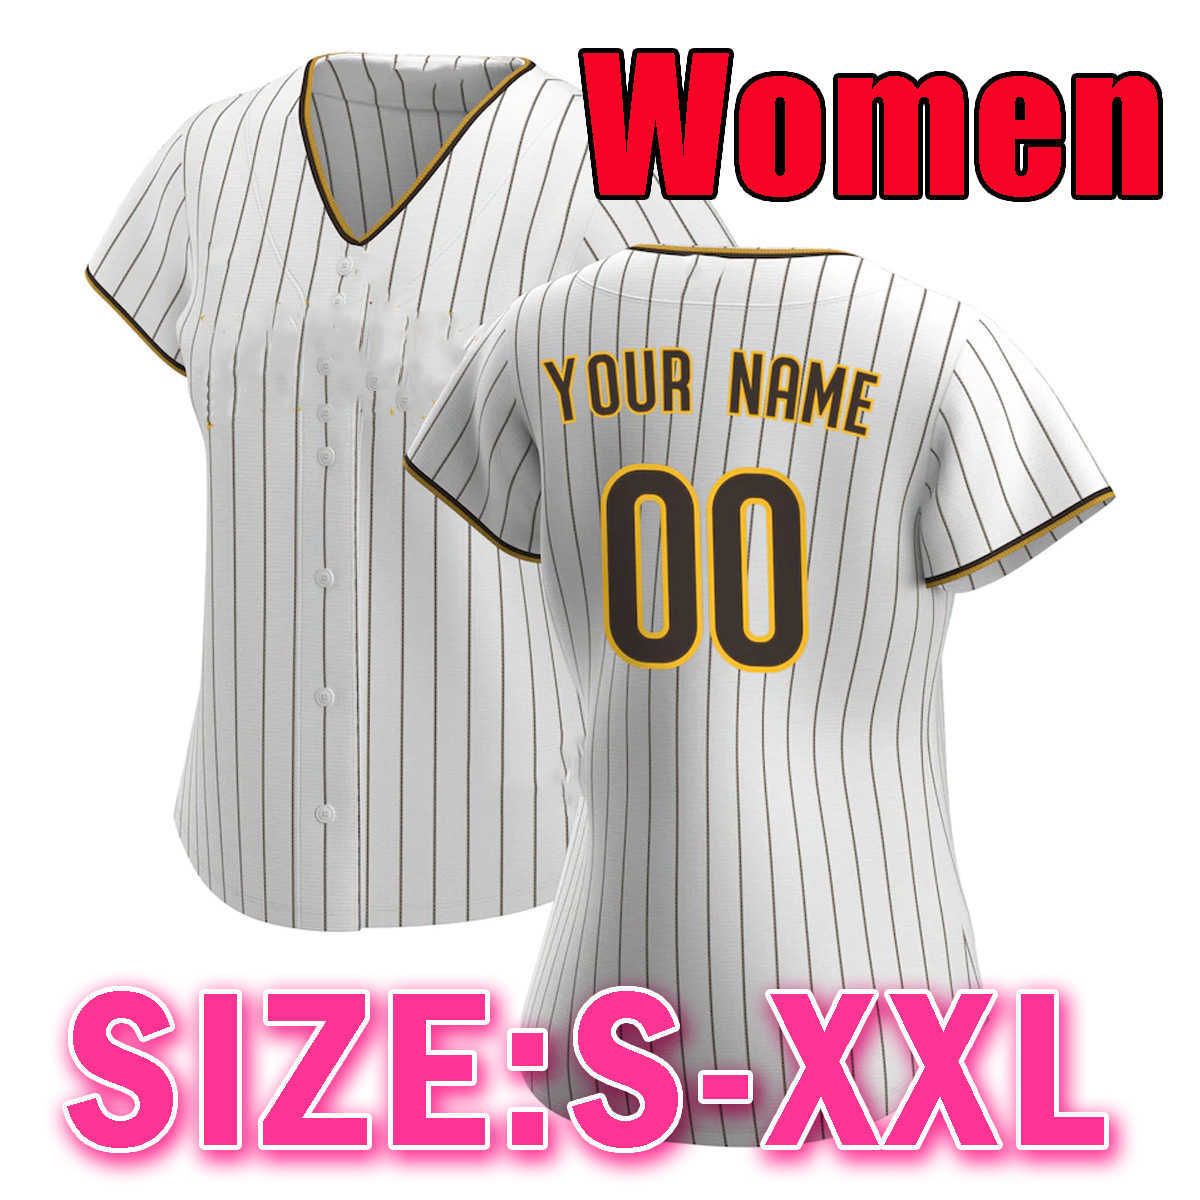 Mulheres (tamanho: S-xxl) Jiaoshi